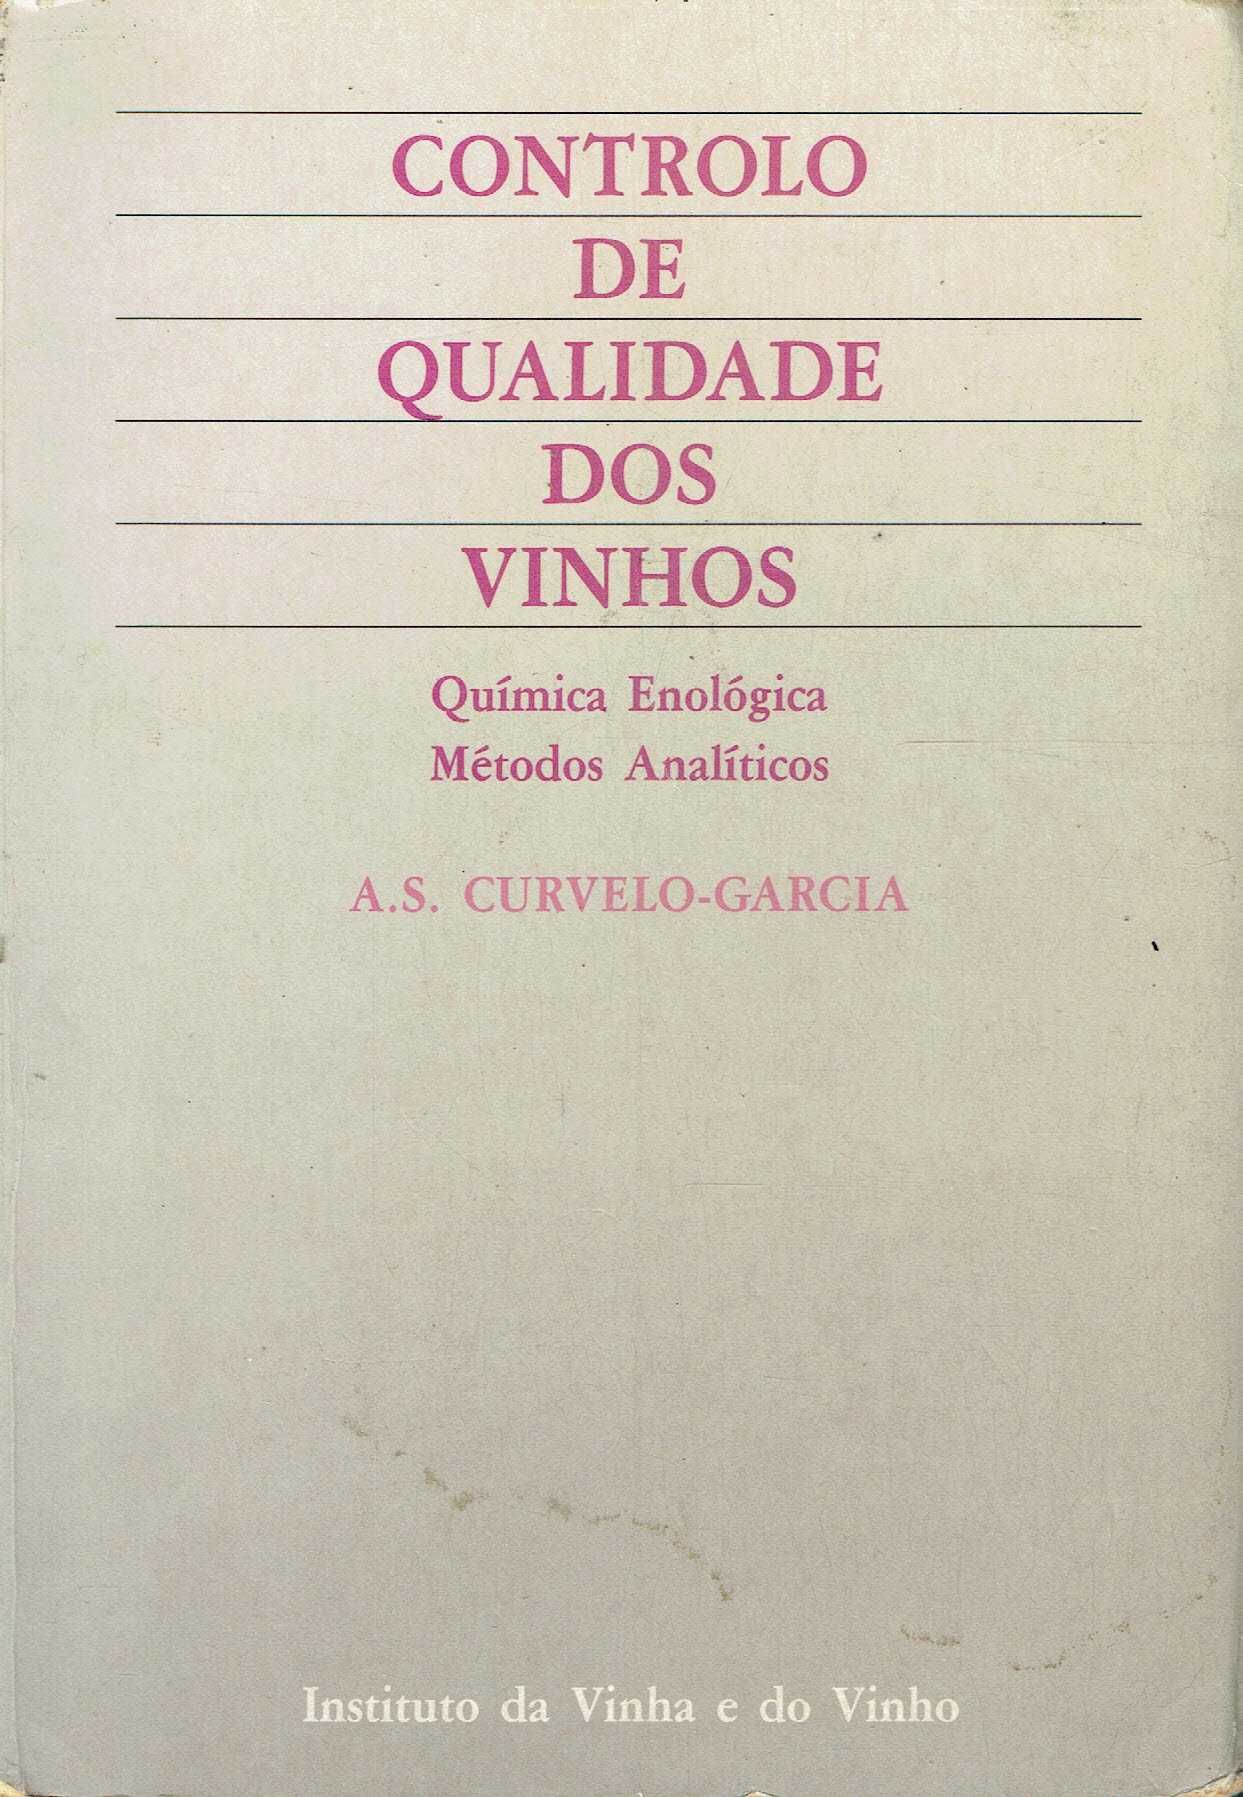 2634

Controlo de qualidade dos vinhos
de A. S. Curvelo-Garcia